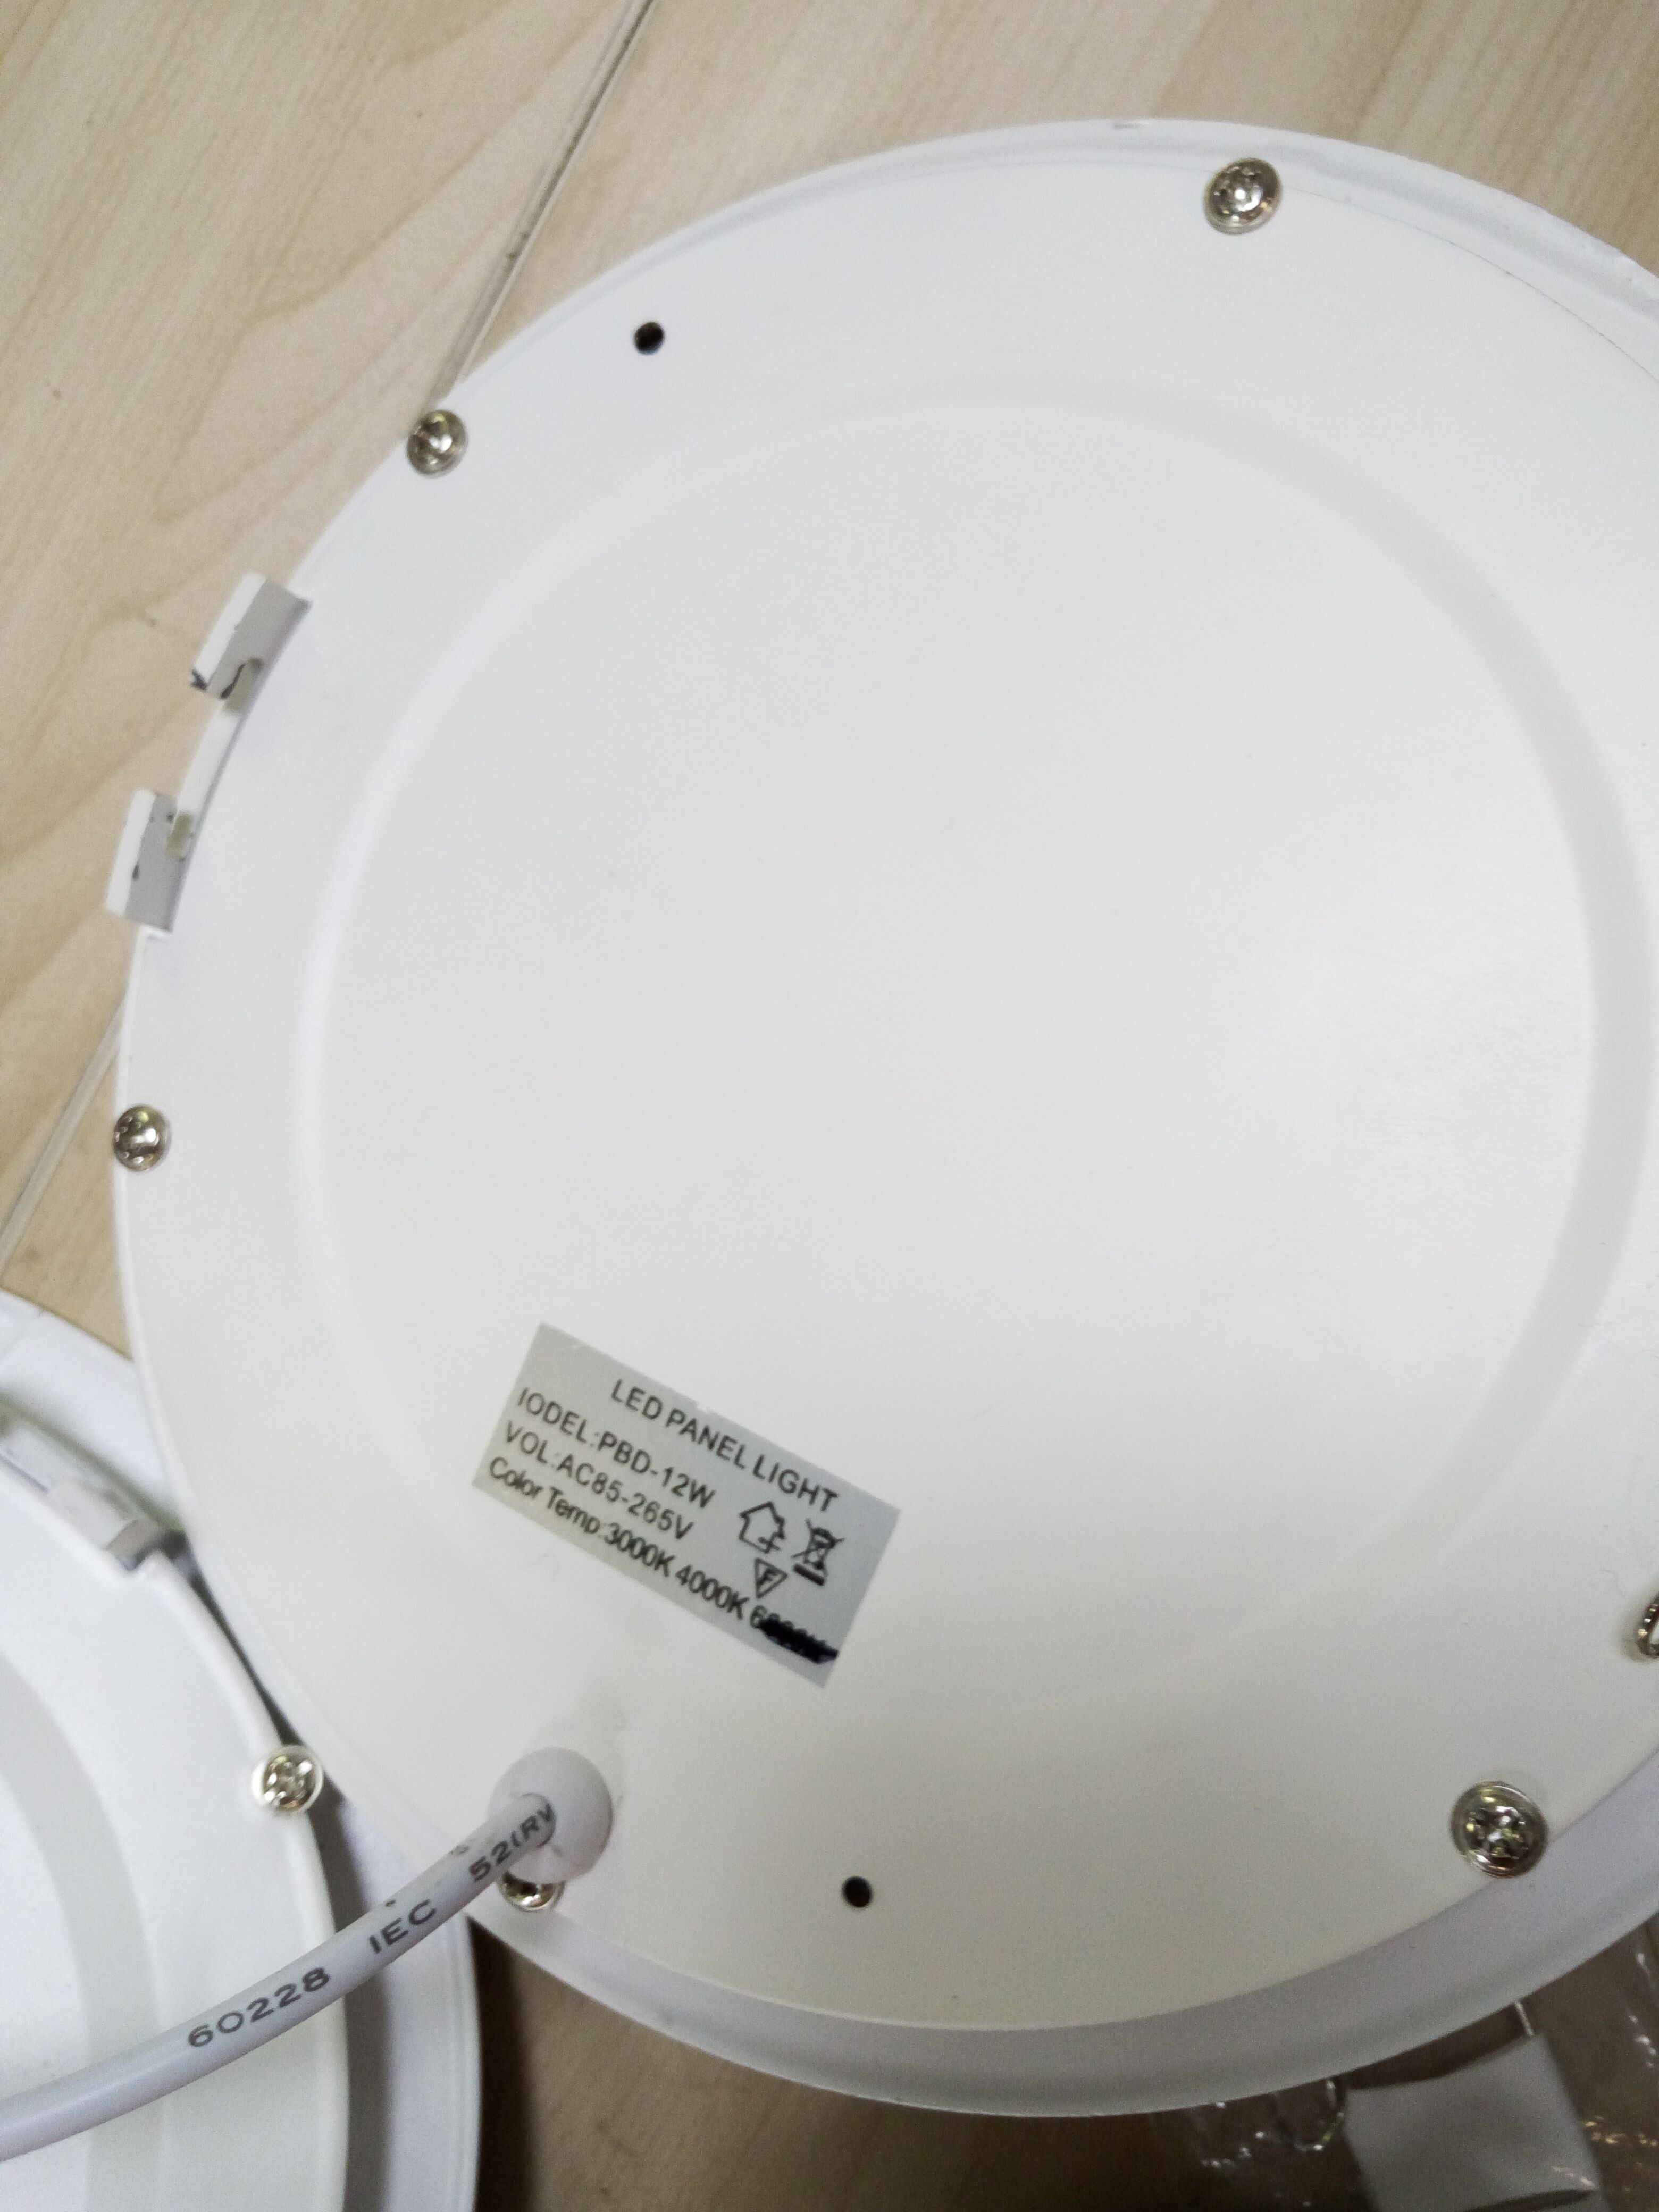 9w 铝圆 暗装 两年质保 可定制彩盒 日雅上新产品 压铸小灯领域创新